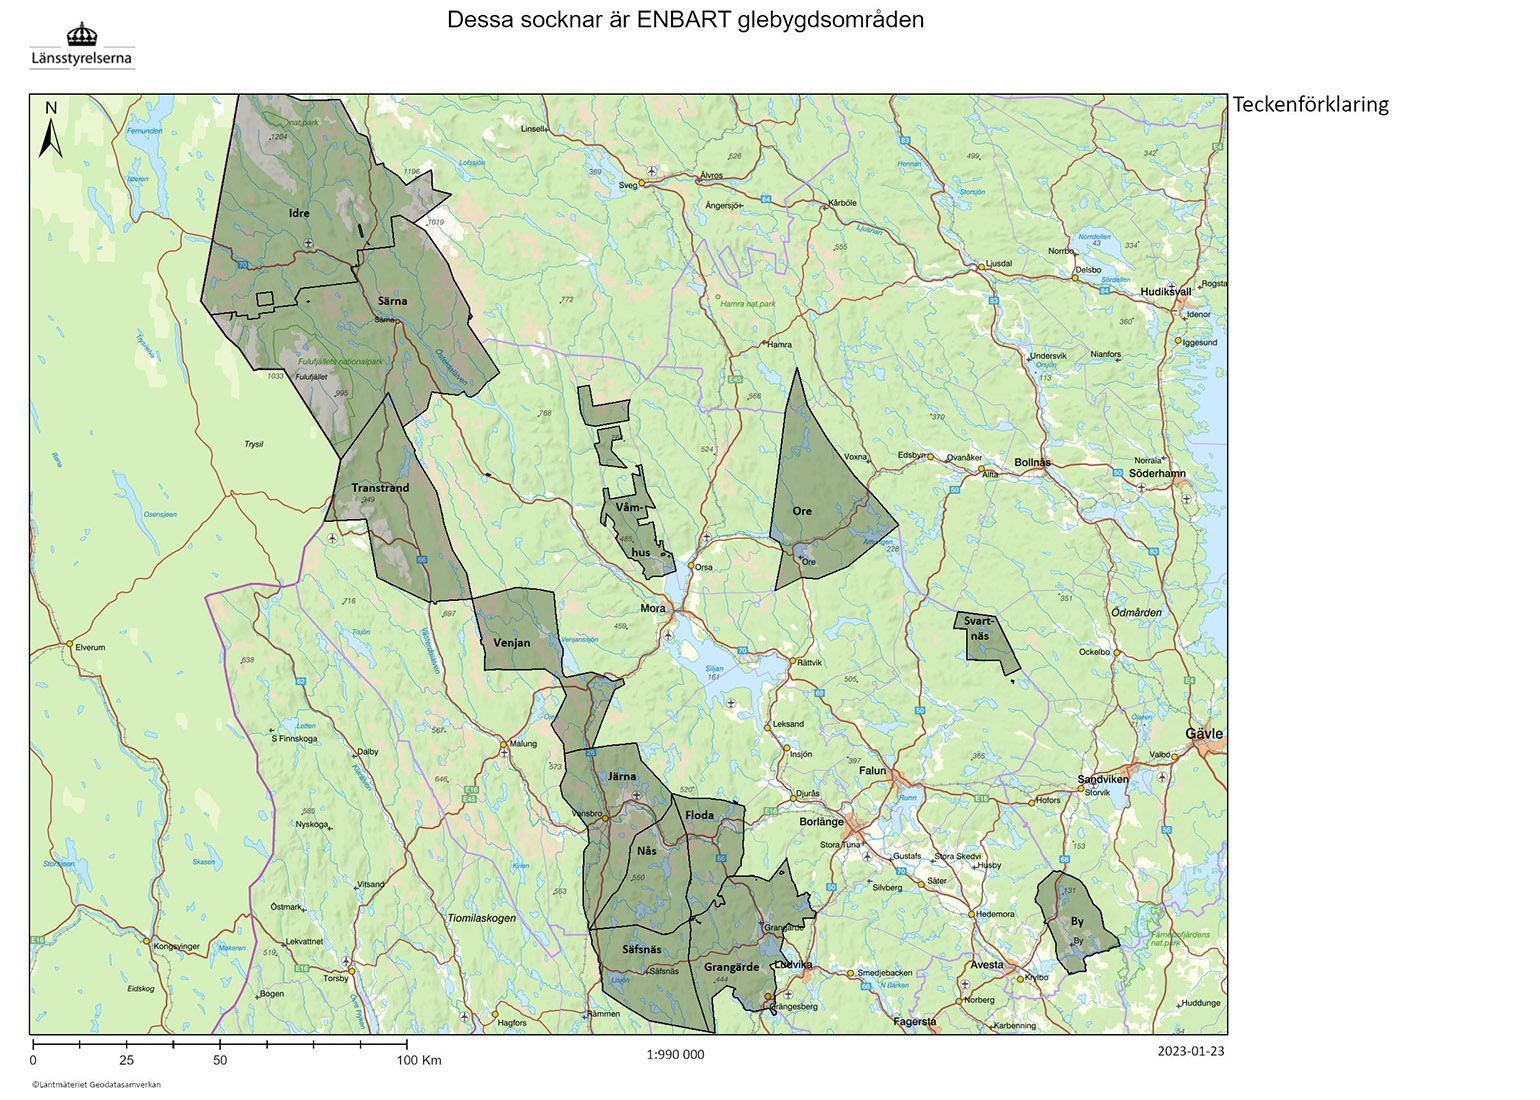 Kartbild över socknar som är enbart glesbygdsområden. Områdena finns beskrivna i text under rubriken Glesbygdsområden.